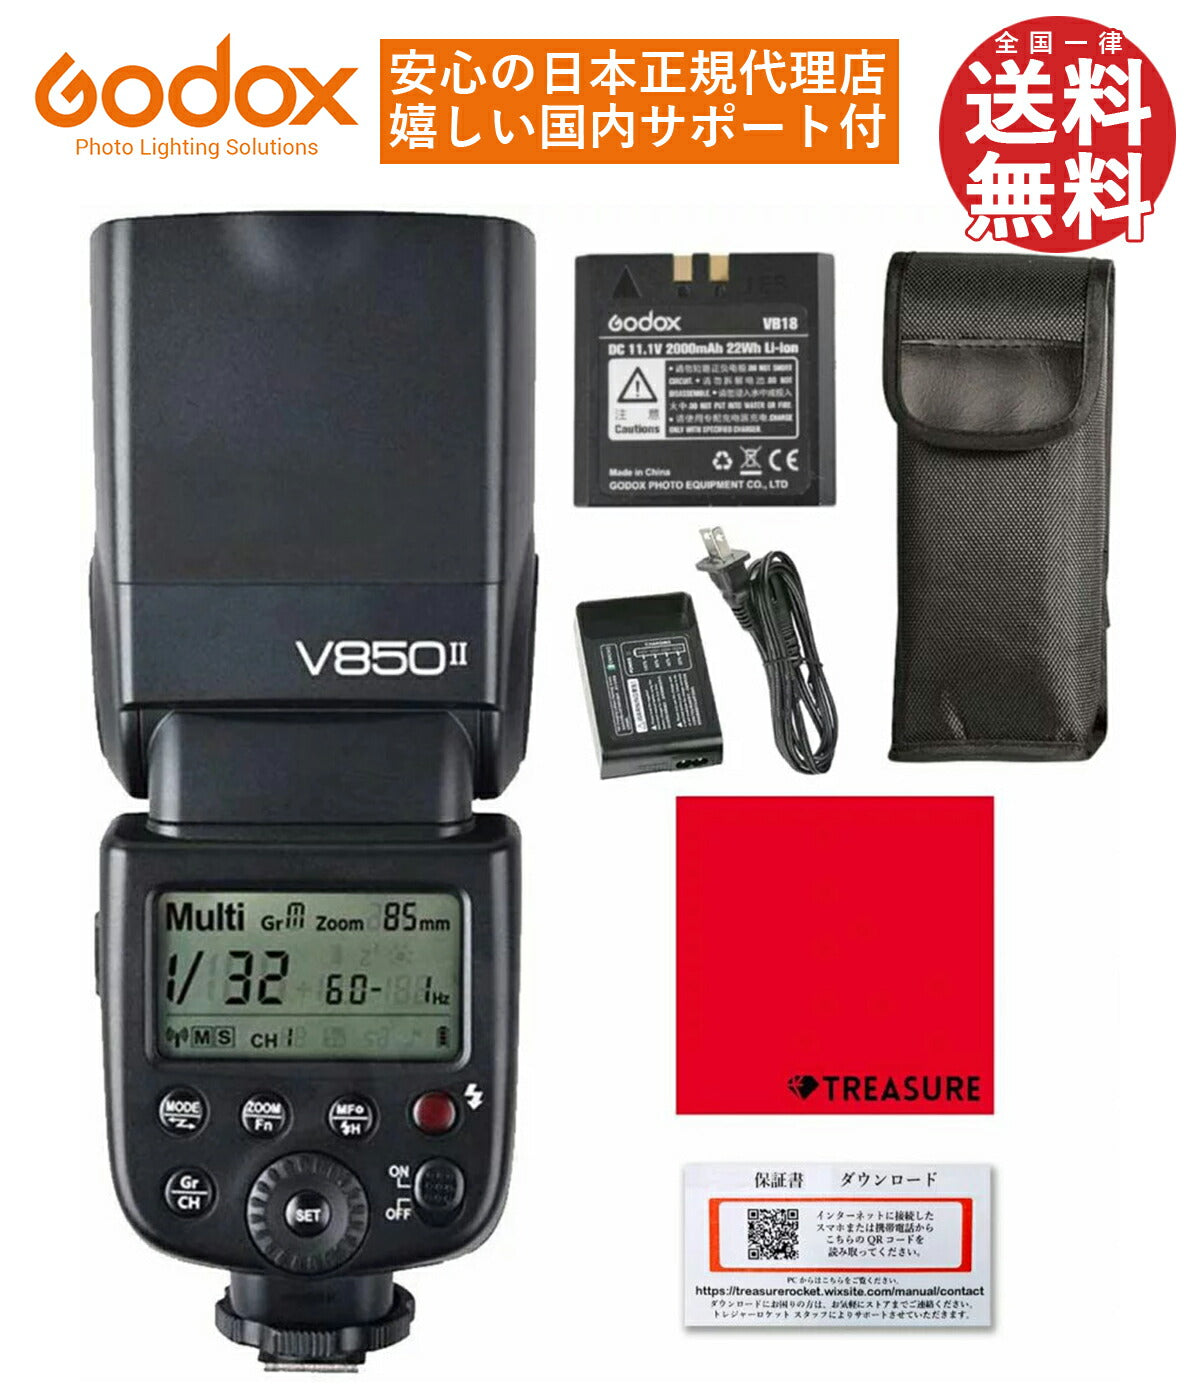 日本正規代理店GodoxVingV850IIスピードライトストロボGN601/8000sHSS汎用シュー技適マーク[キャノン/ニコン/ペンタックス/オリンパス/日本語説明書/クロス/セット品](V850II)